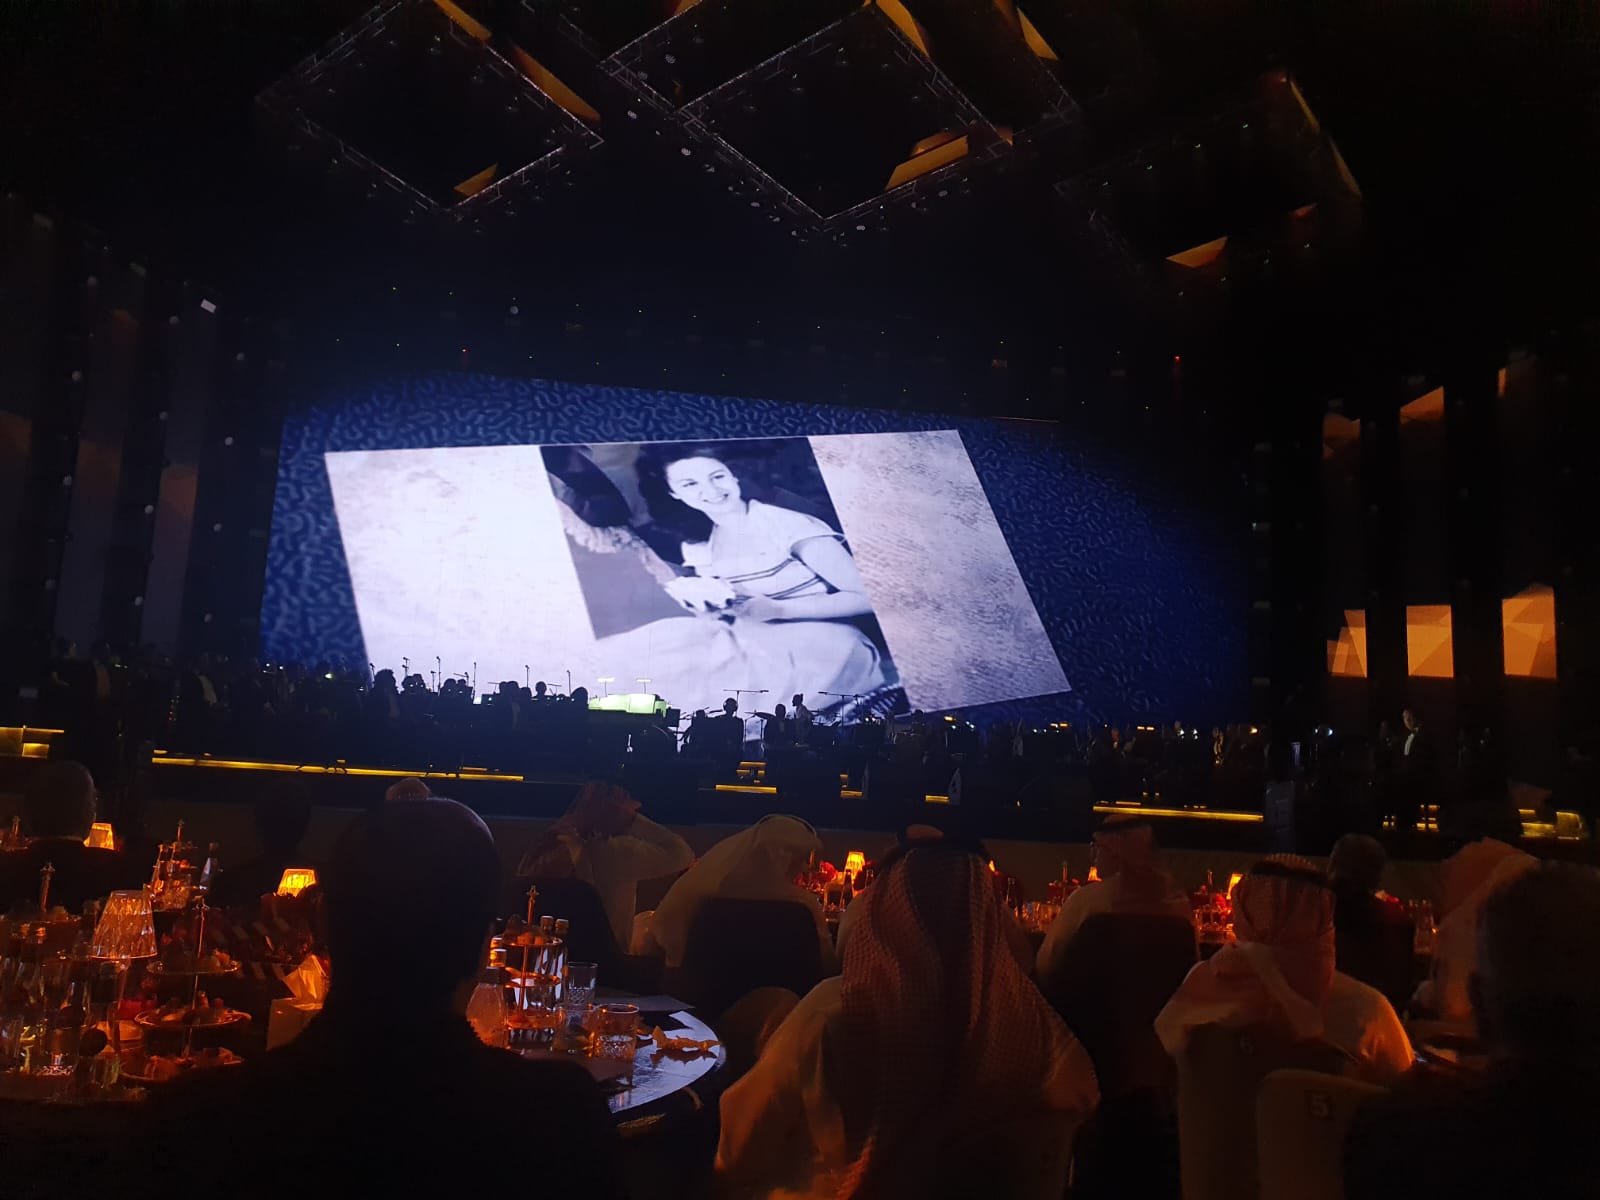 أنغام تقدم حفل تكريم الموسيقار هانى شنودة بالرياض وعرض فيلم تسجيلى عن حياته (5)